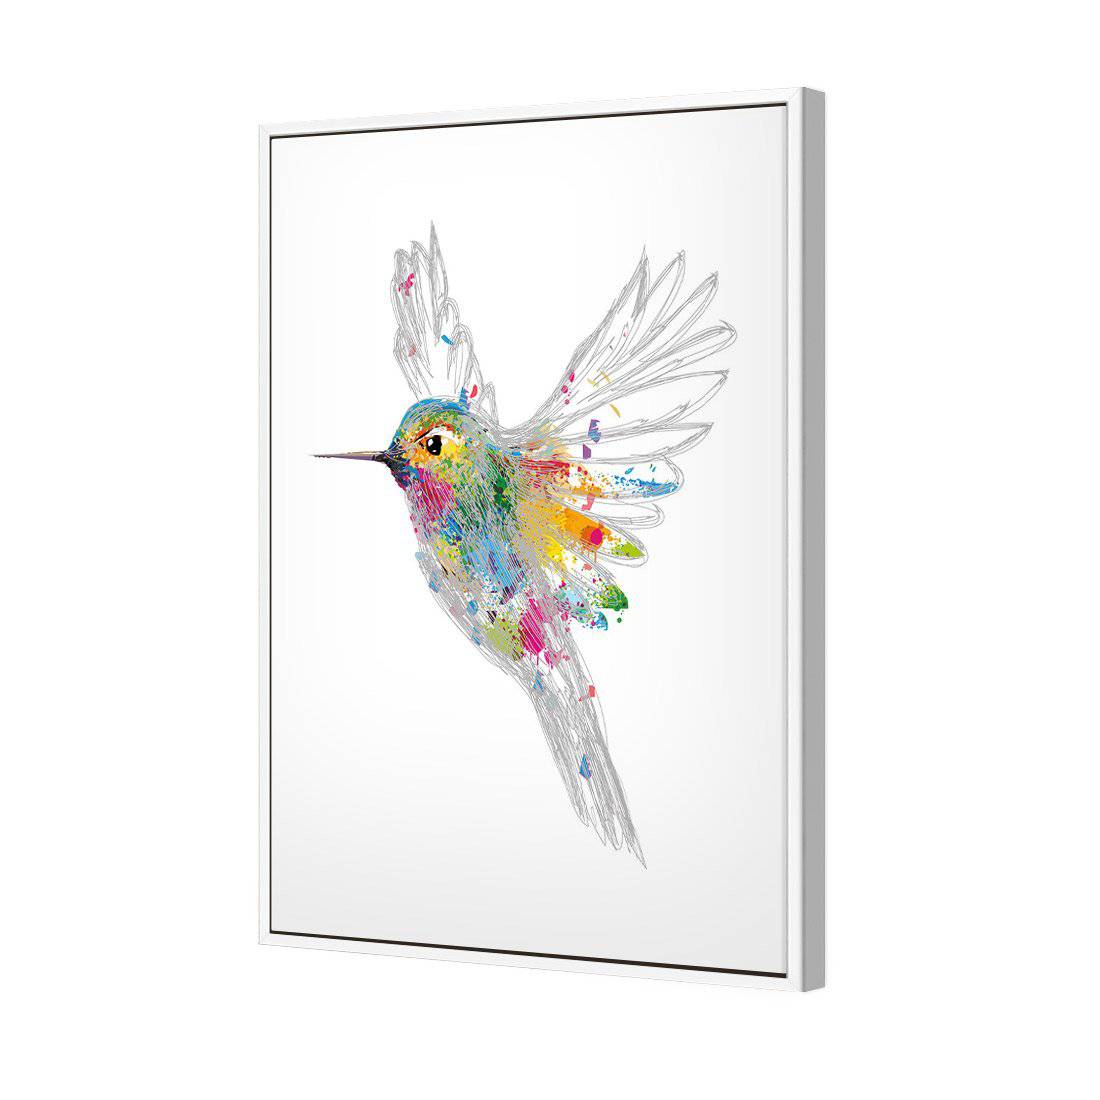 Imagination in Flight Canvas Art-Canvas-Wall Art Designs-45x30cm-Canvas - White Frame-Wall Art Designs